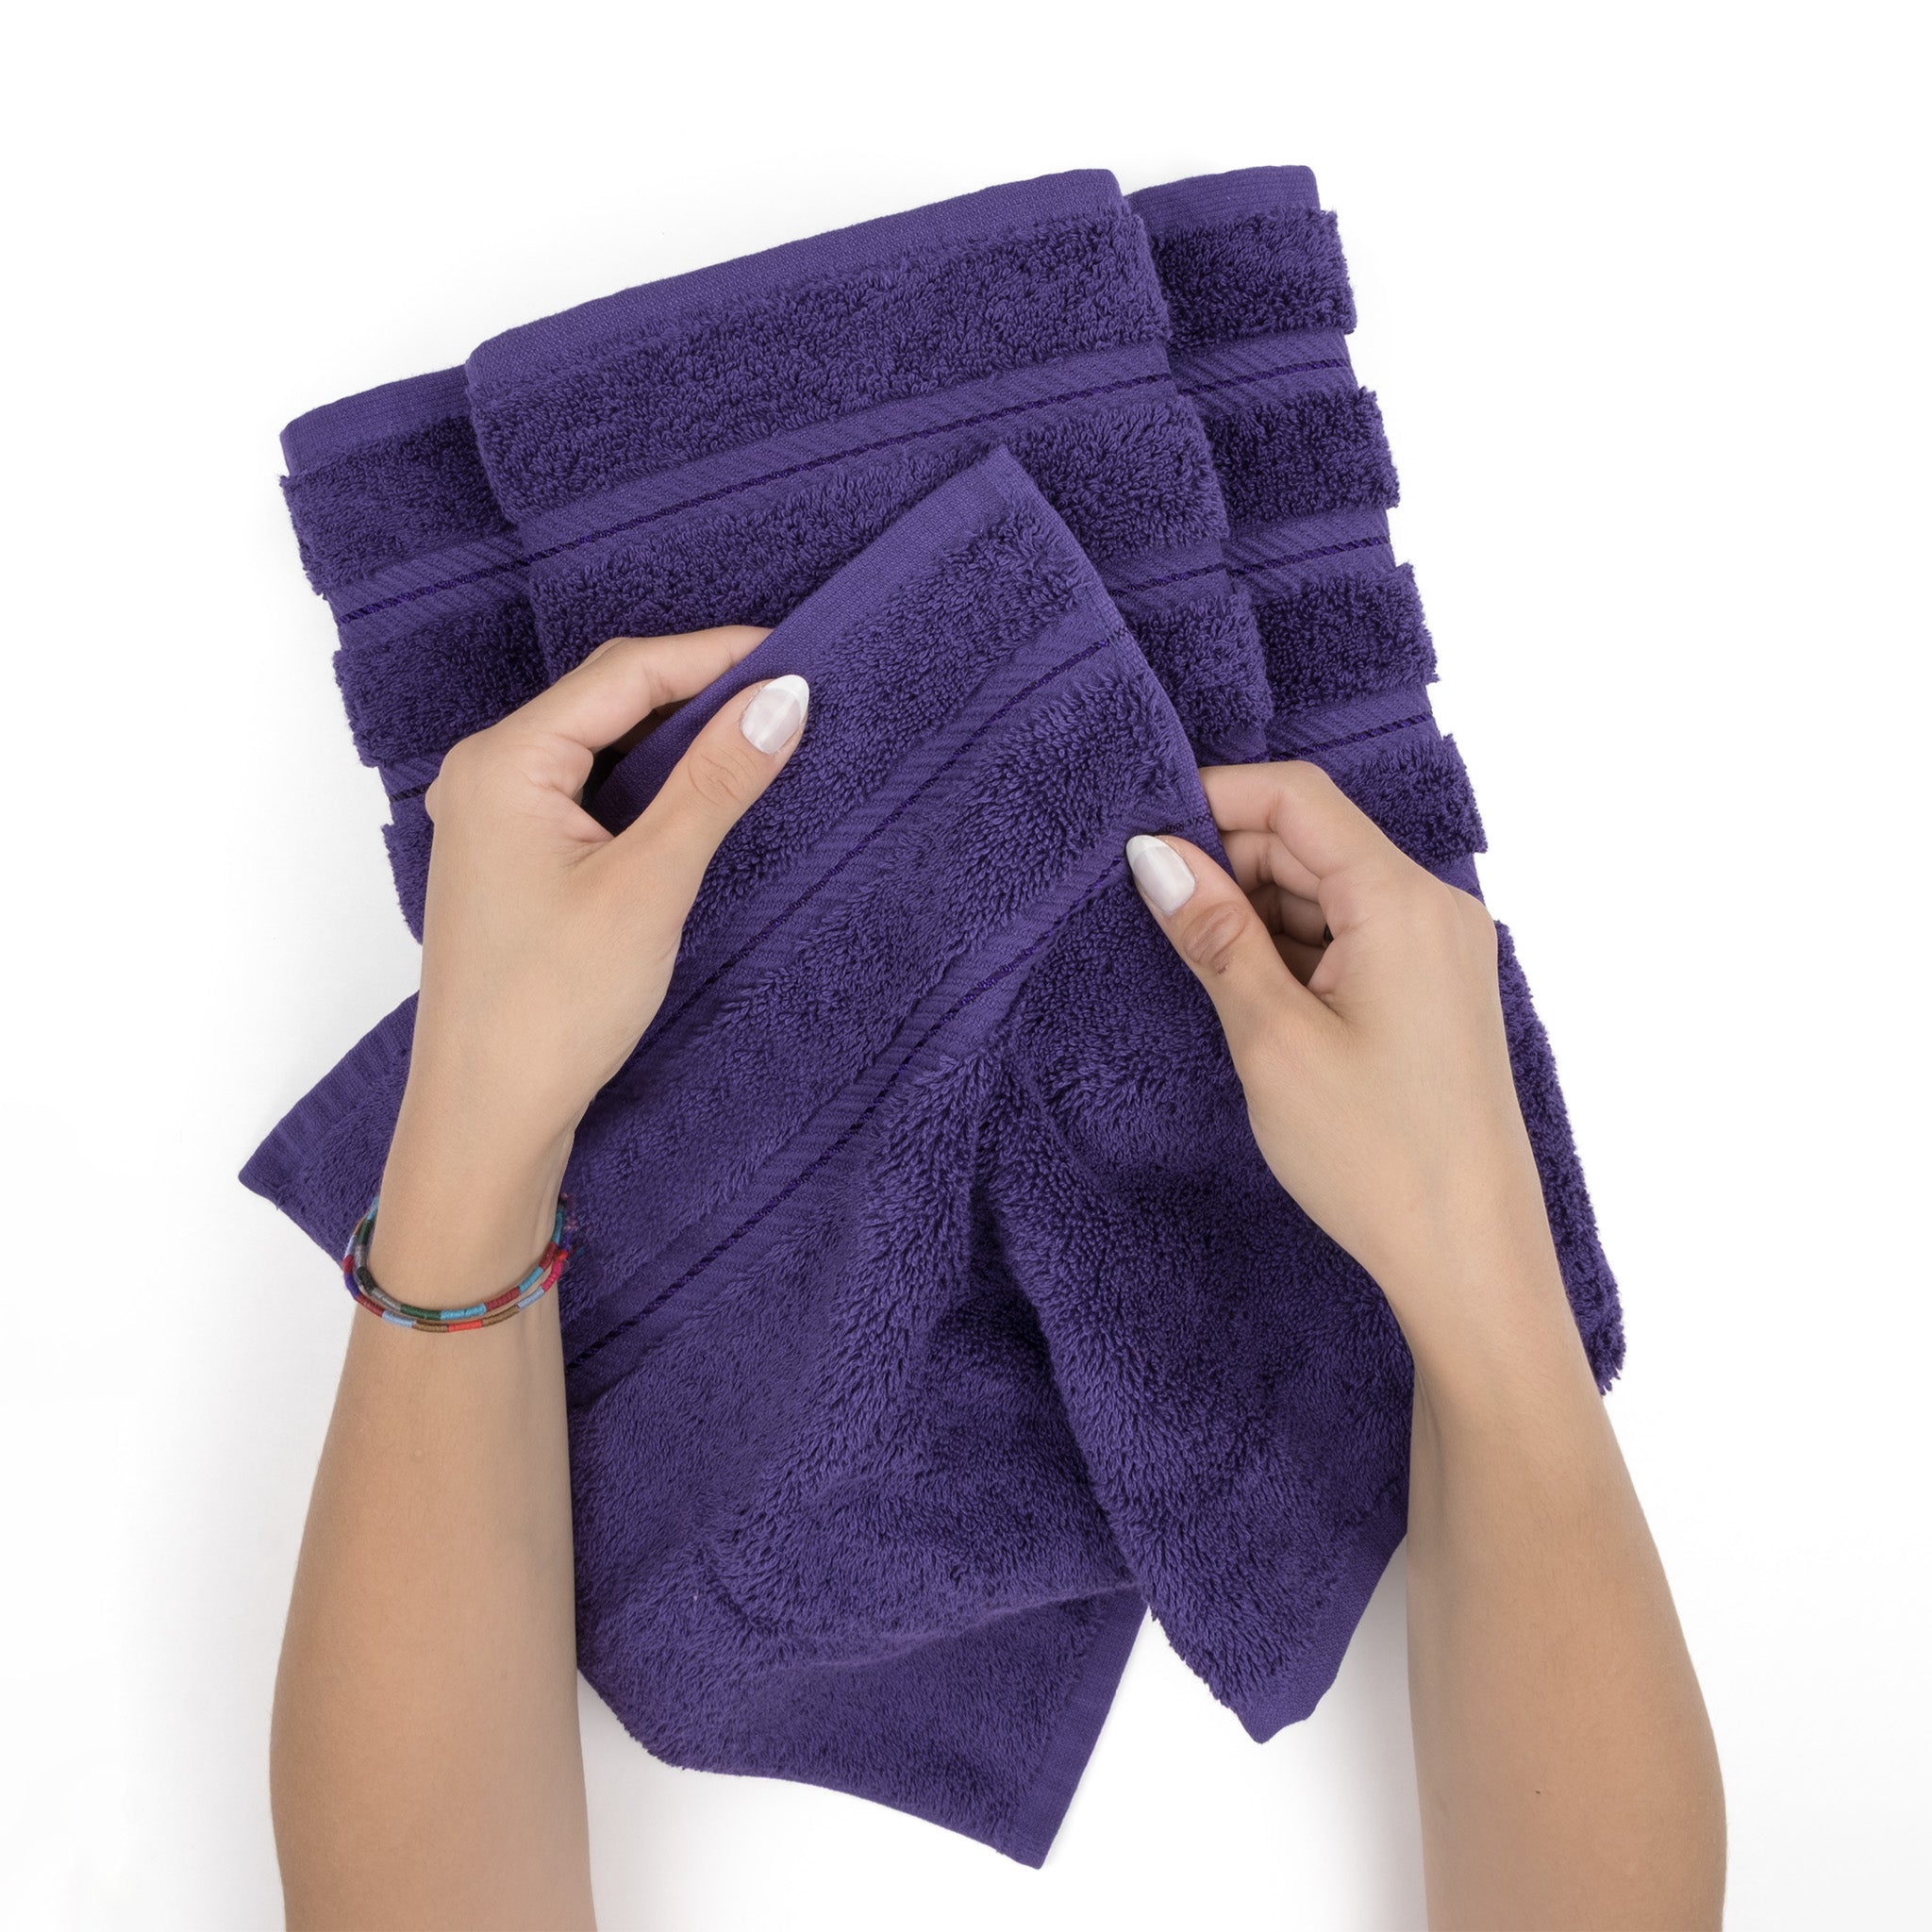 American Soft Linen 100% Turkish Cotton 4 Pack Bath Towel Set Wholesale purple-5